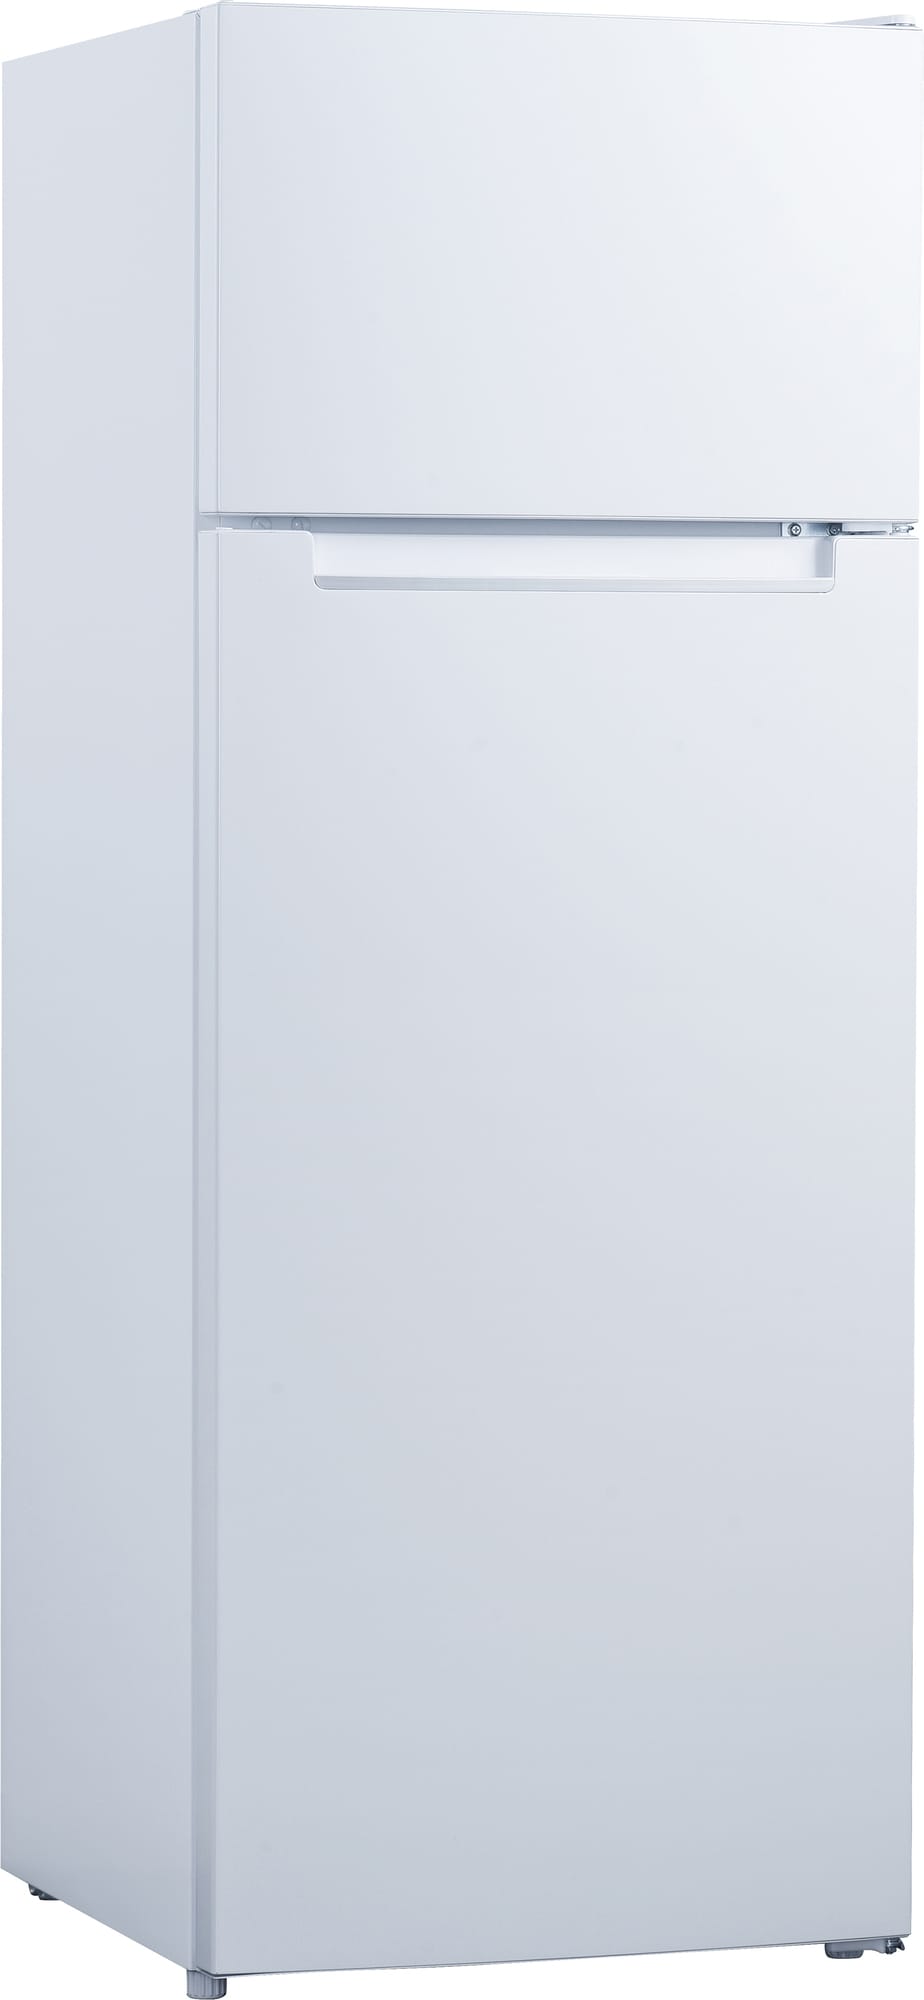 Logik kjøleskap/fryser L55TW20E - Elkjøp